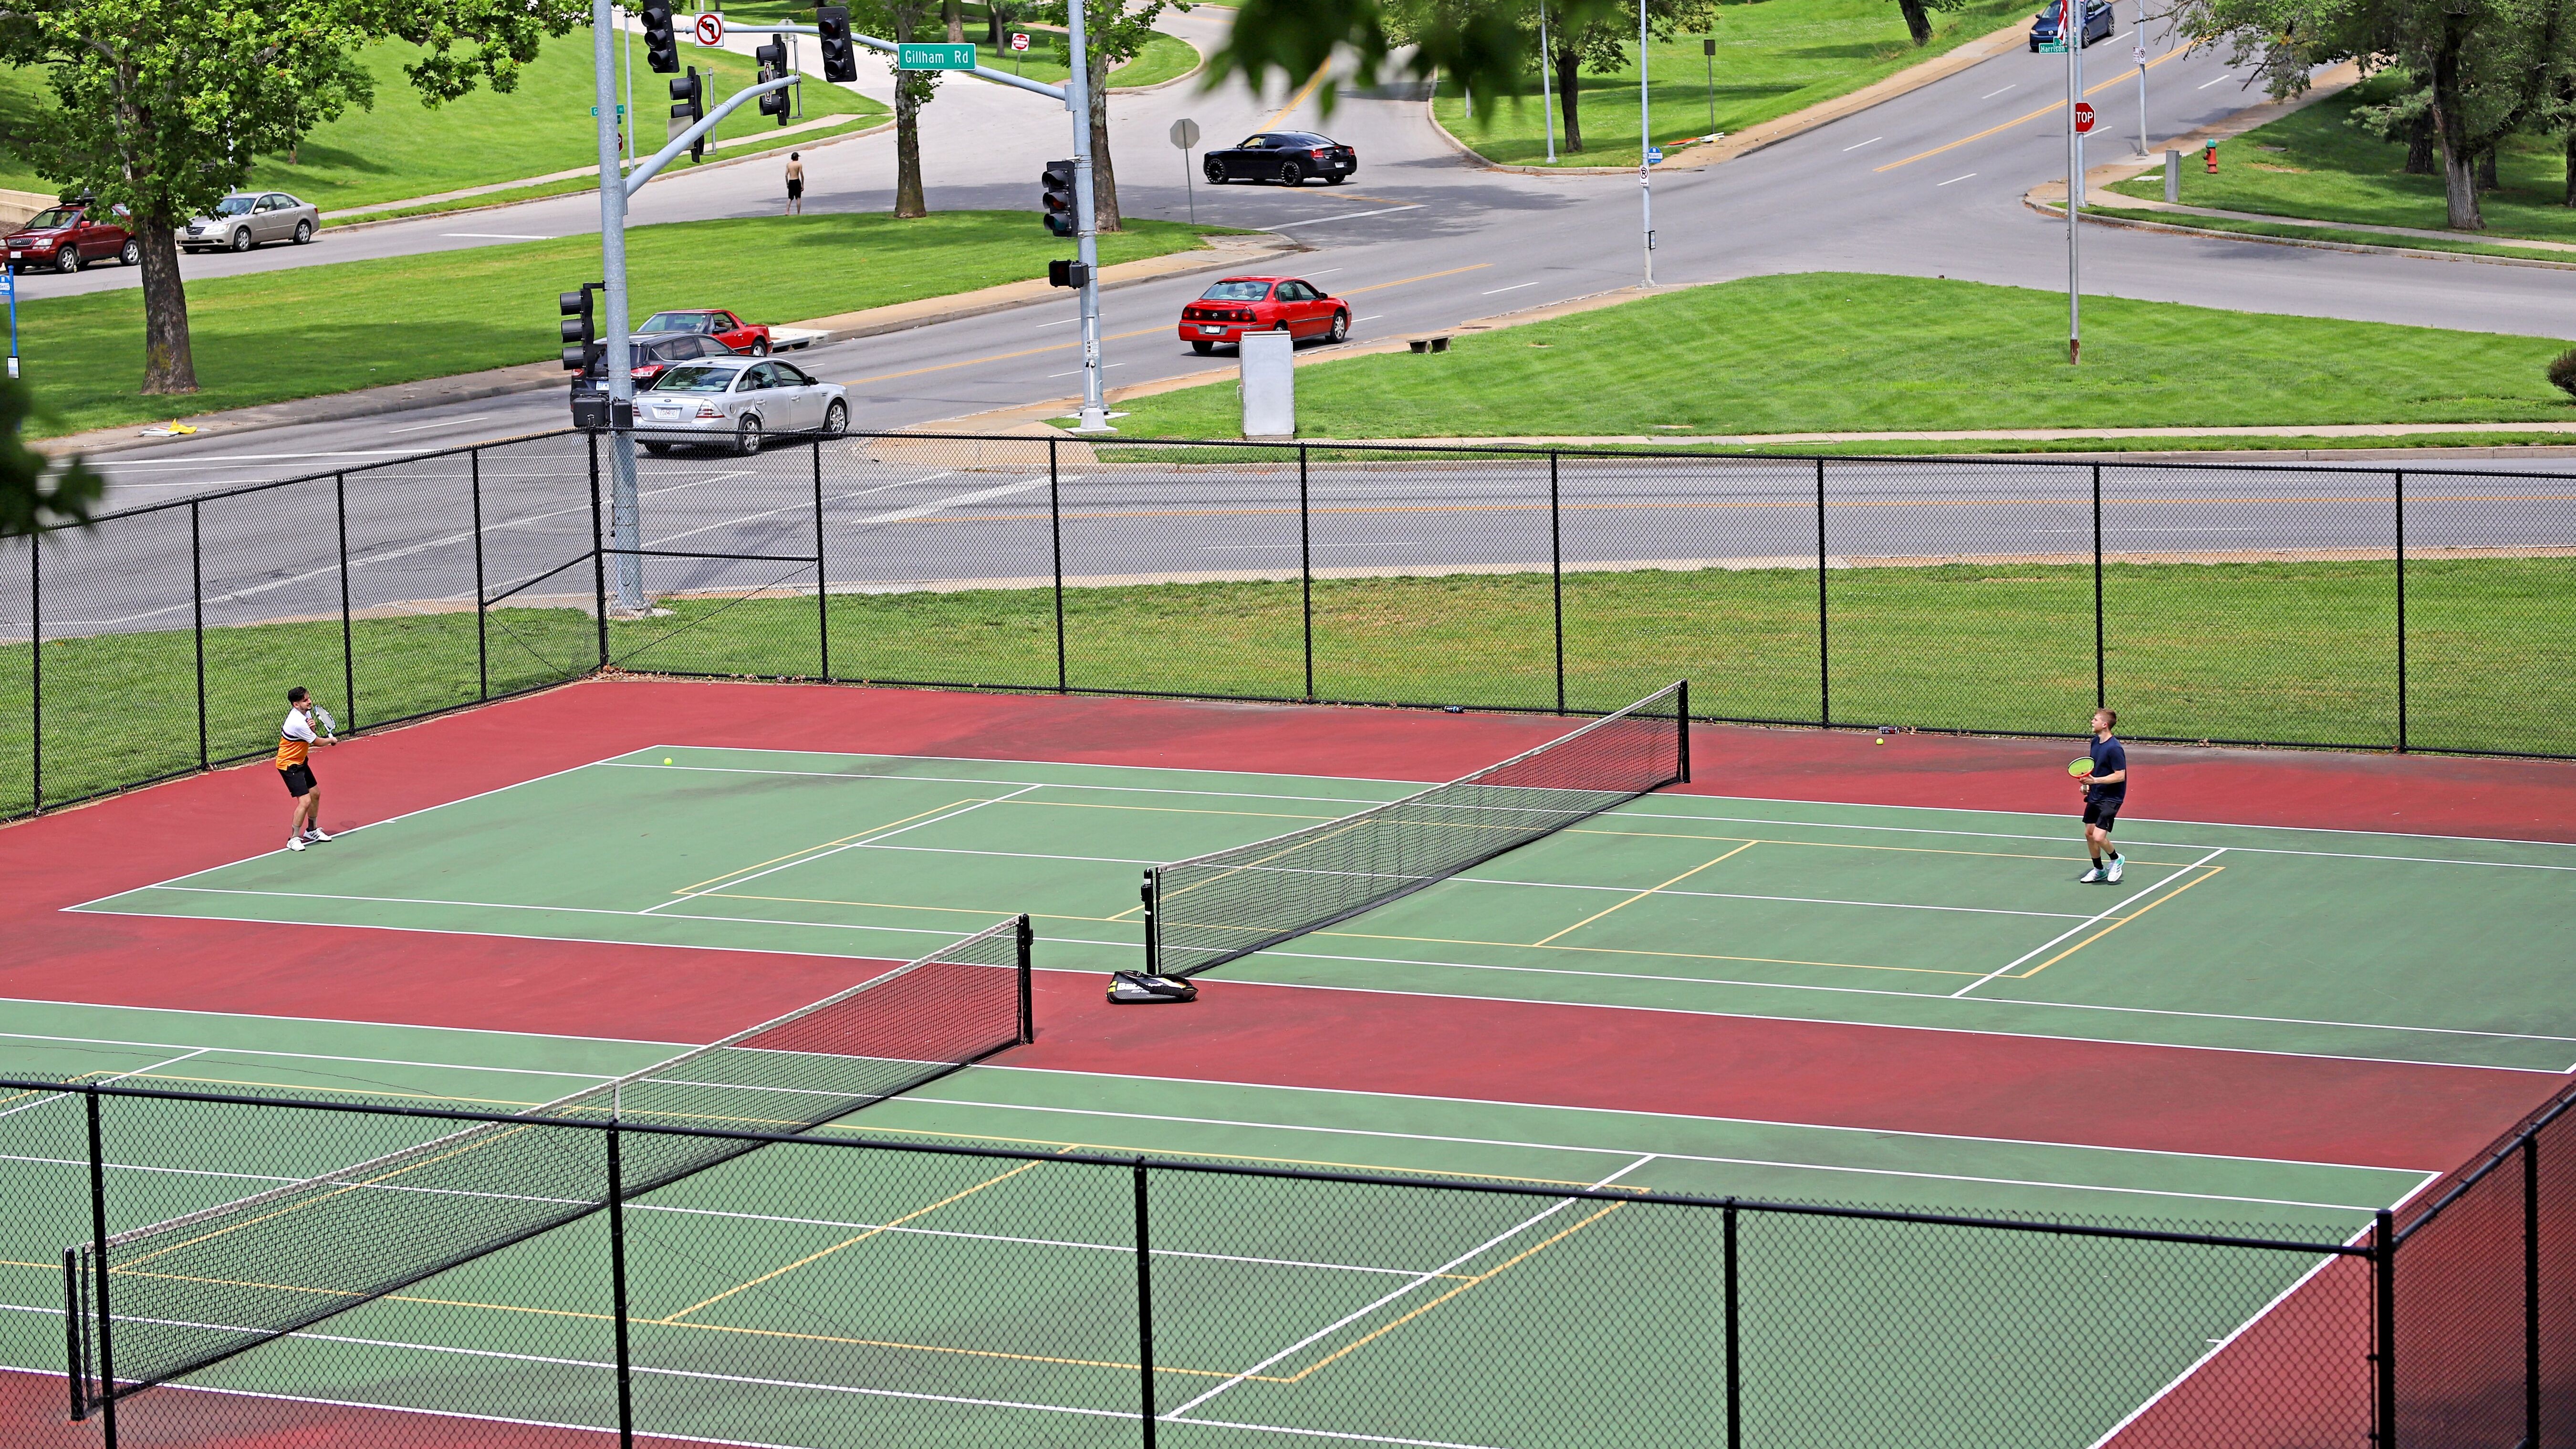 Gillham Park Tennis Courts